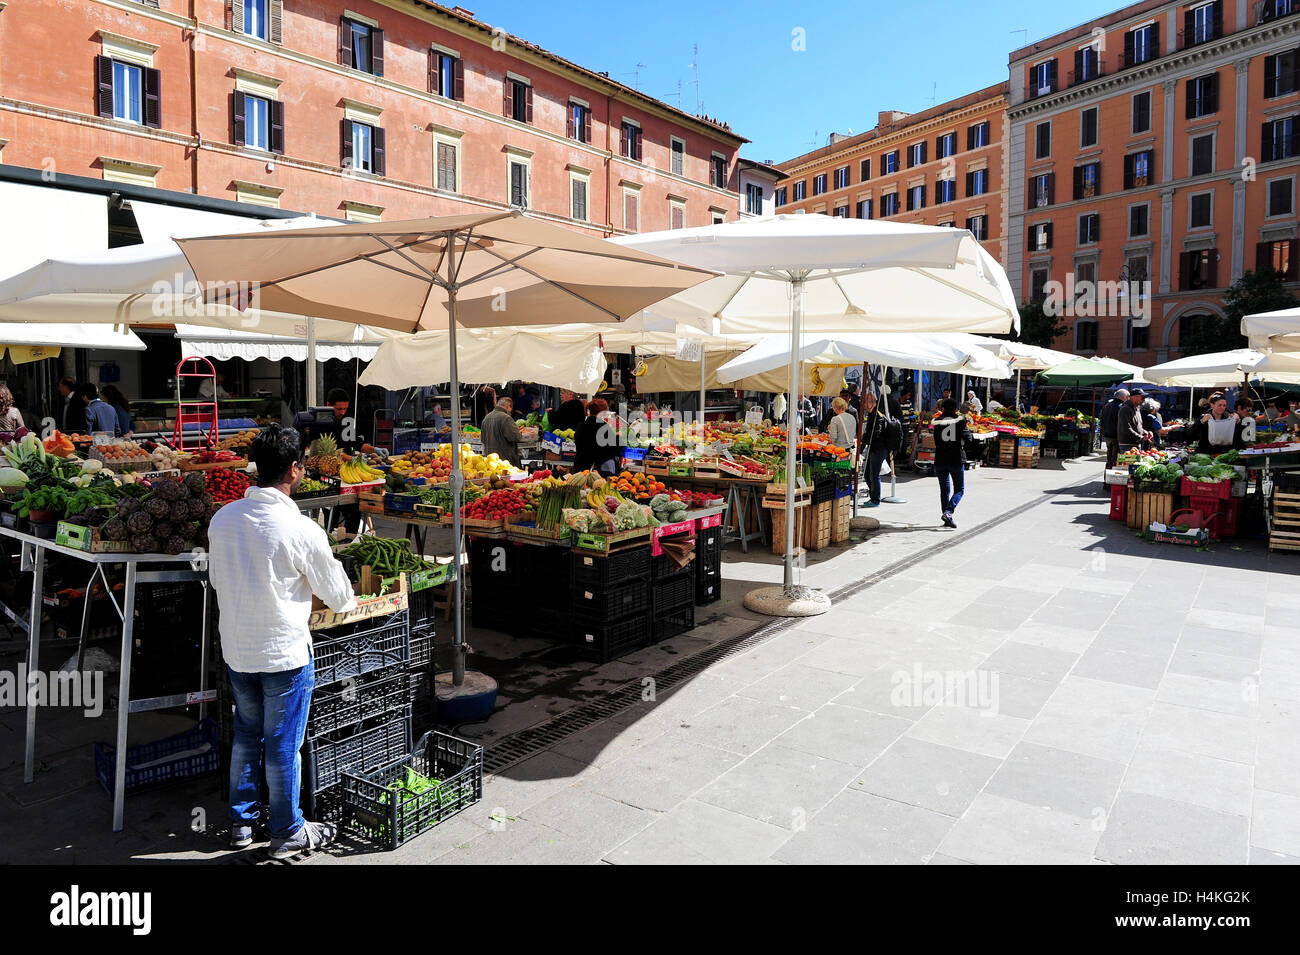 El mercado de fruta y verdura de Trastevere, Roma, Italia Foto de stock